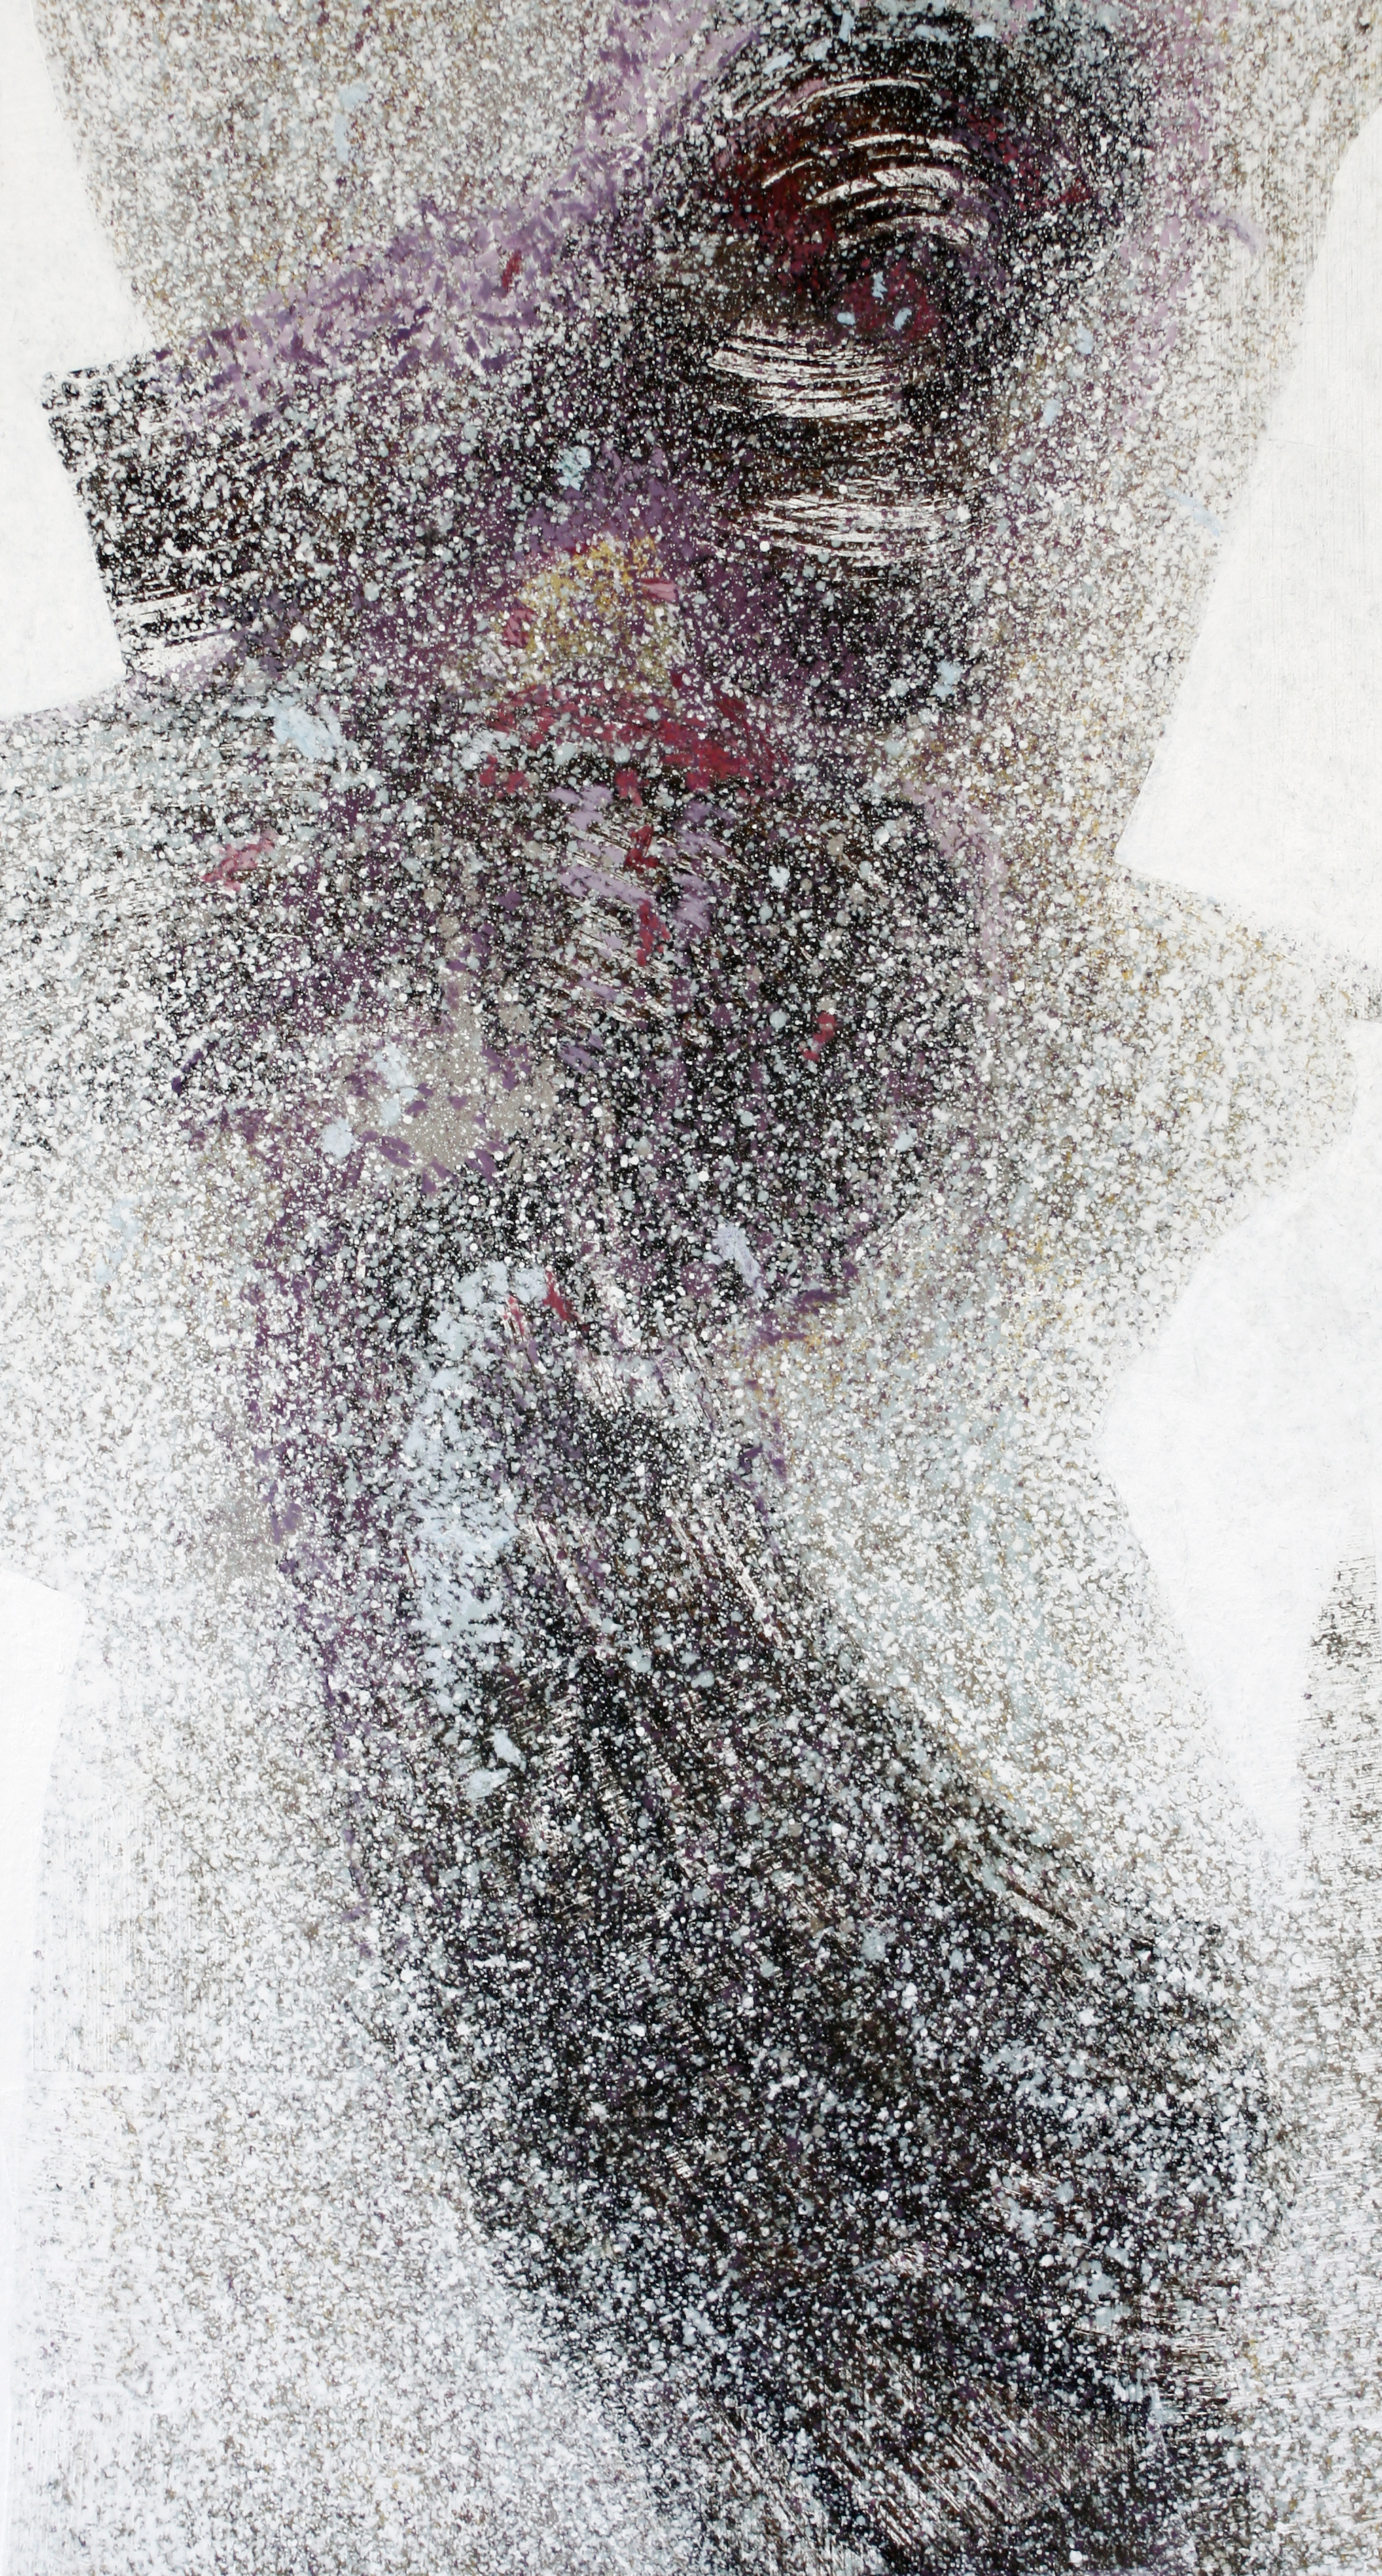 Gamid Ibadullayev, Bez tytułu, akryl, płyta, 125 x 65 cm, 2016, cena: 3100 zł